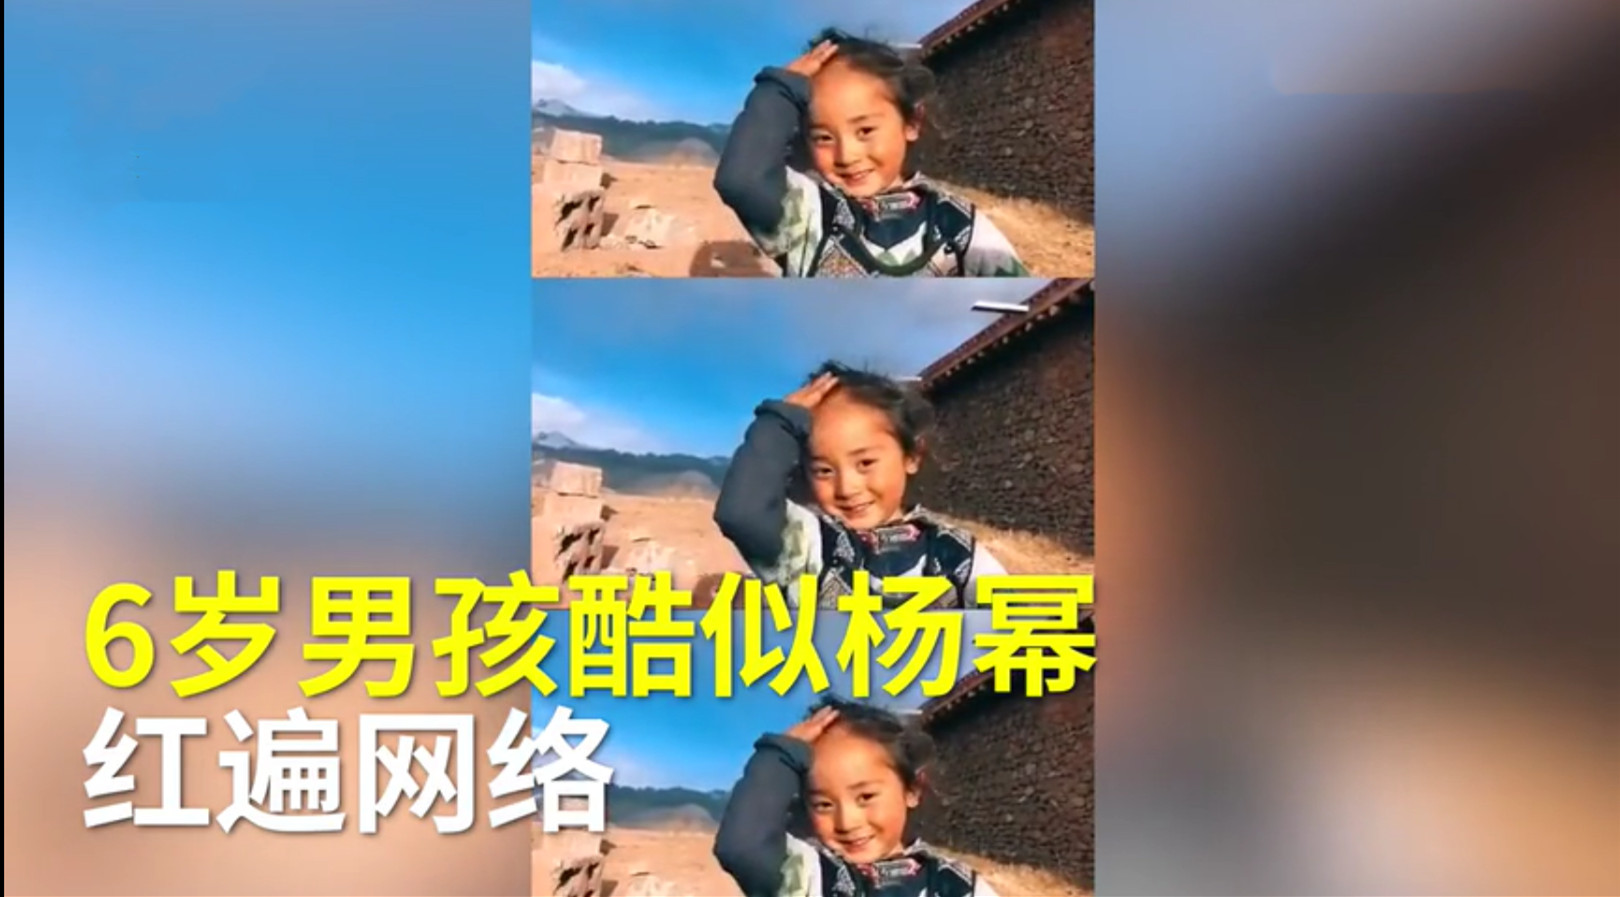 6岁藏族小男孩撞脸杨幂走红，撩头发甜笑迷倒众人